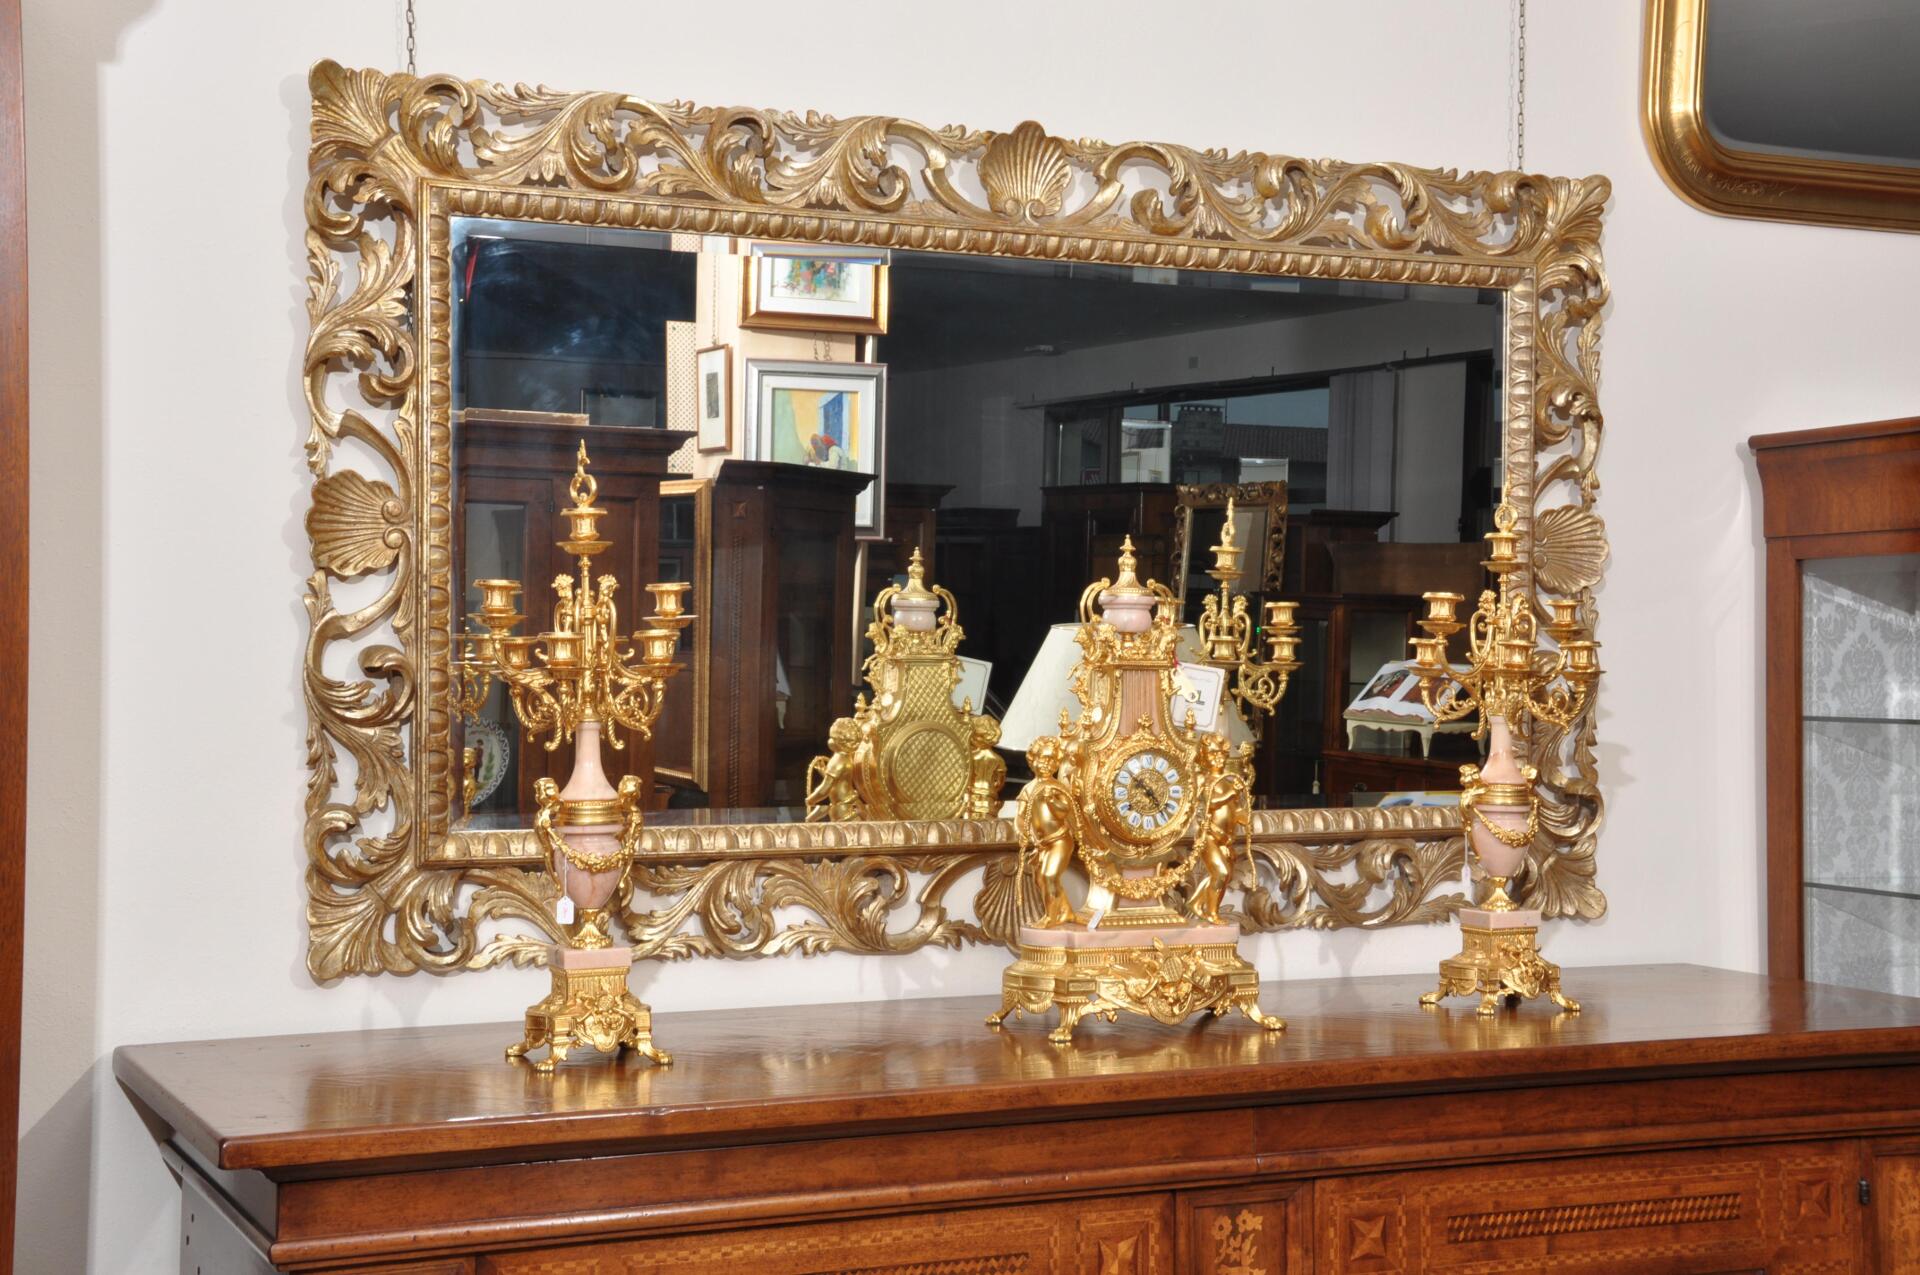 Specchiera stile Barocco in foglia d'oro - Gli originali solo su